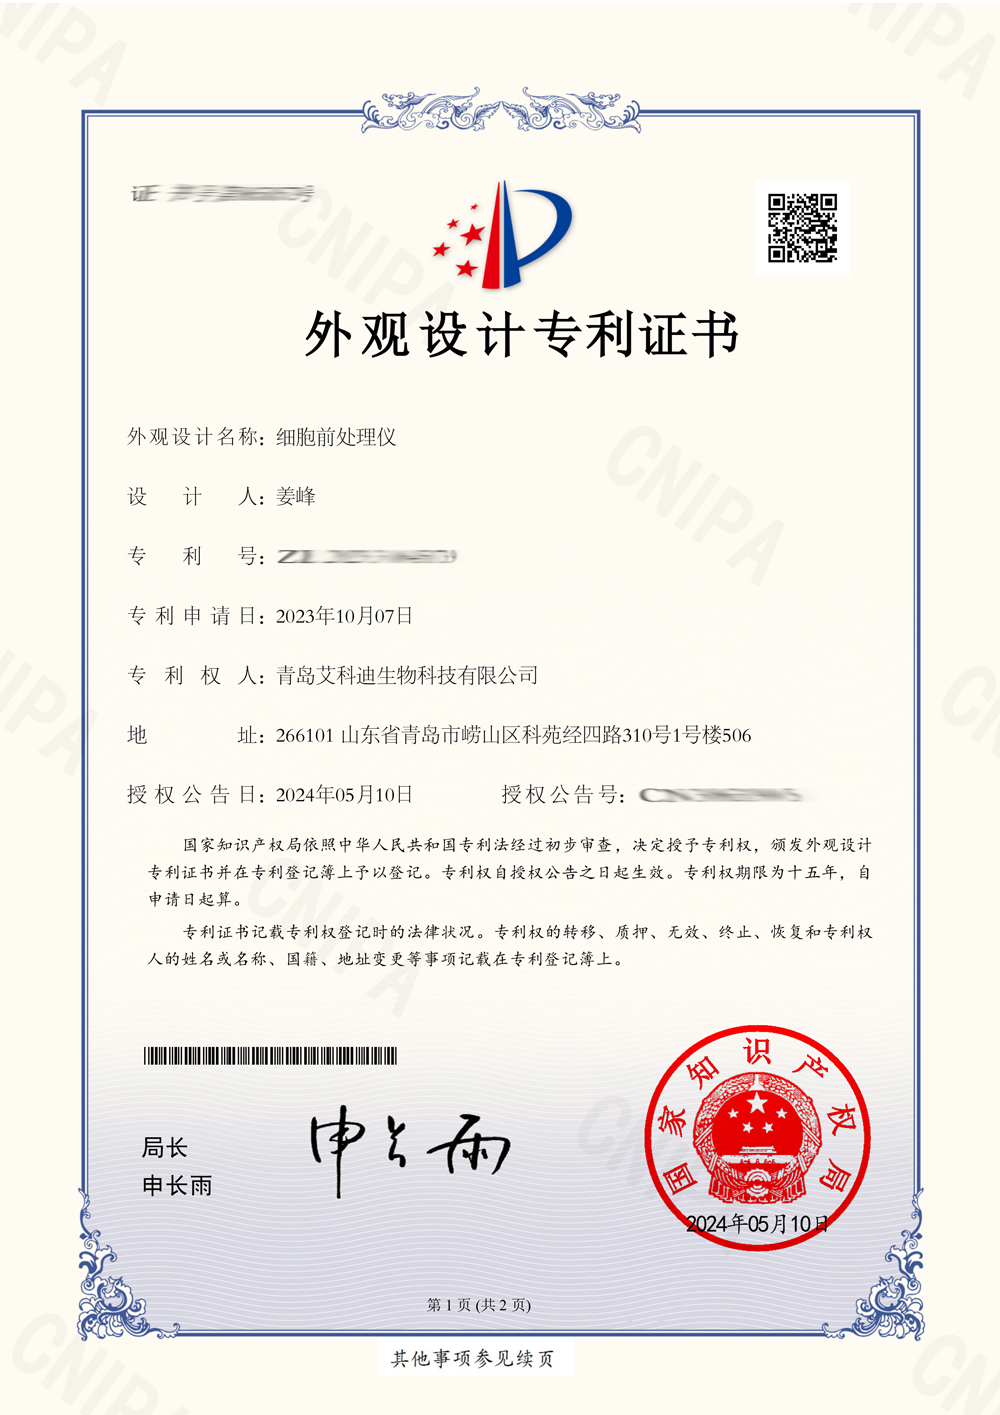 2023306451739-外观设计专利证书(签章)(1)-1